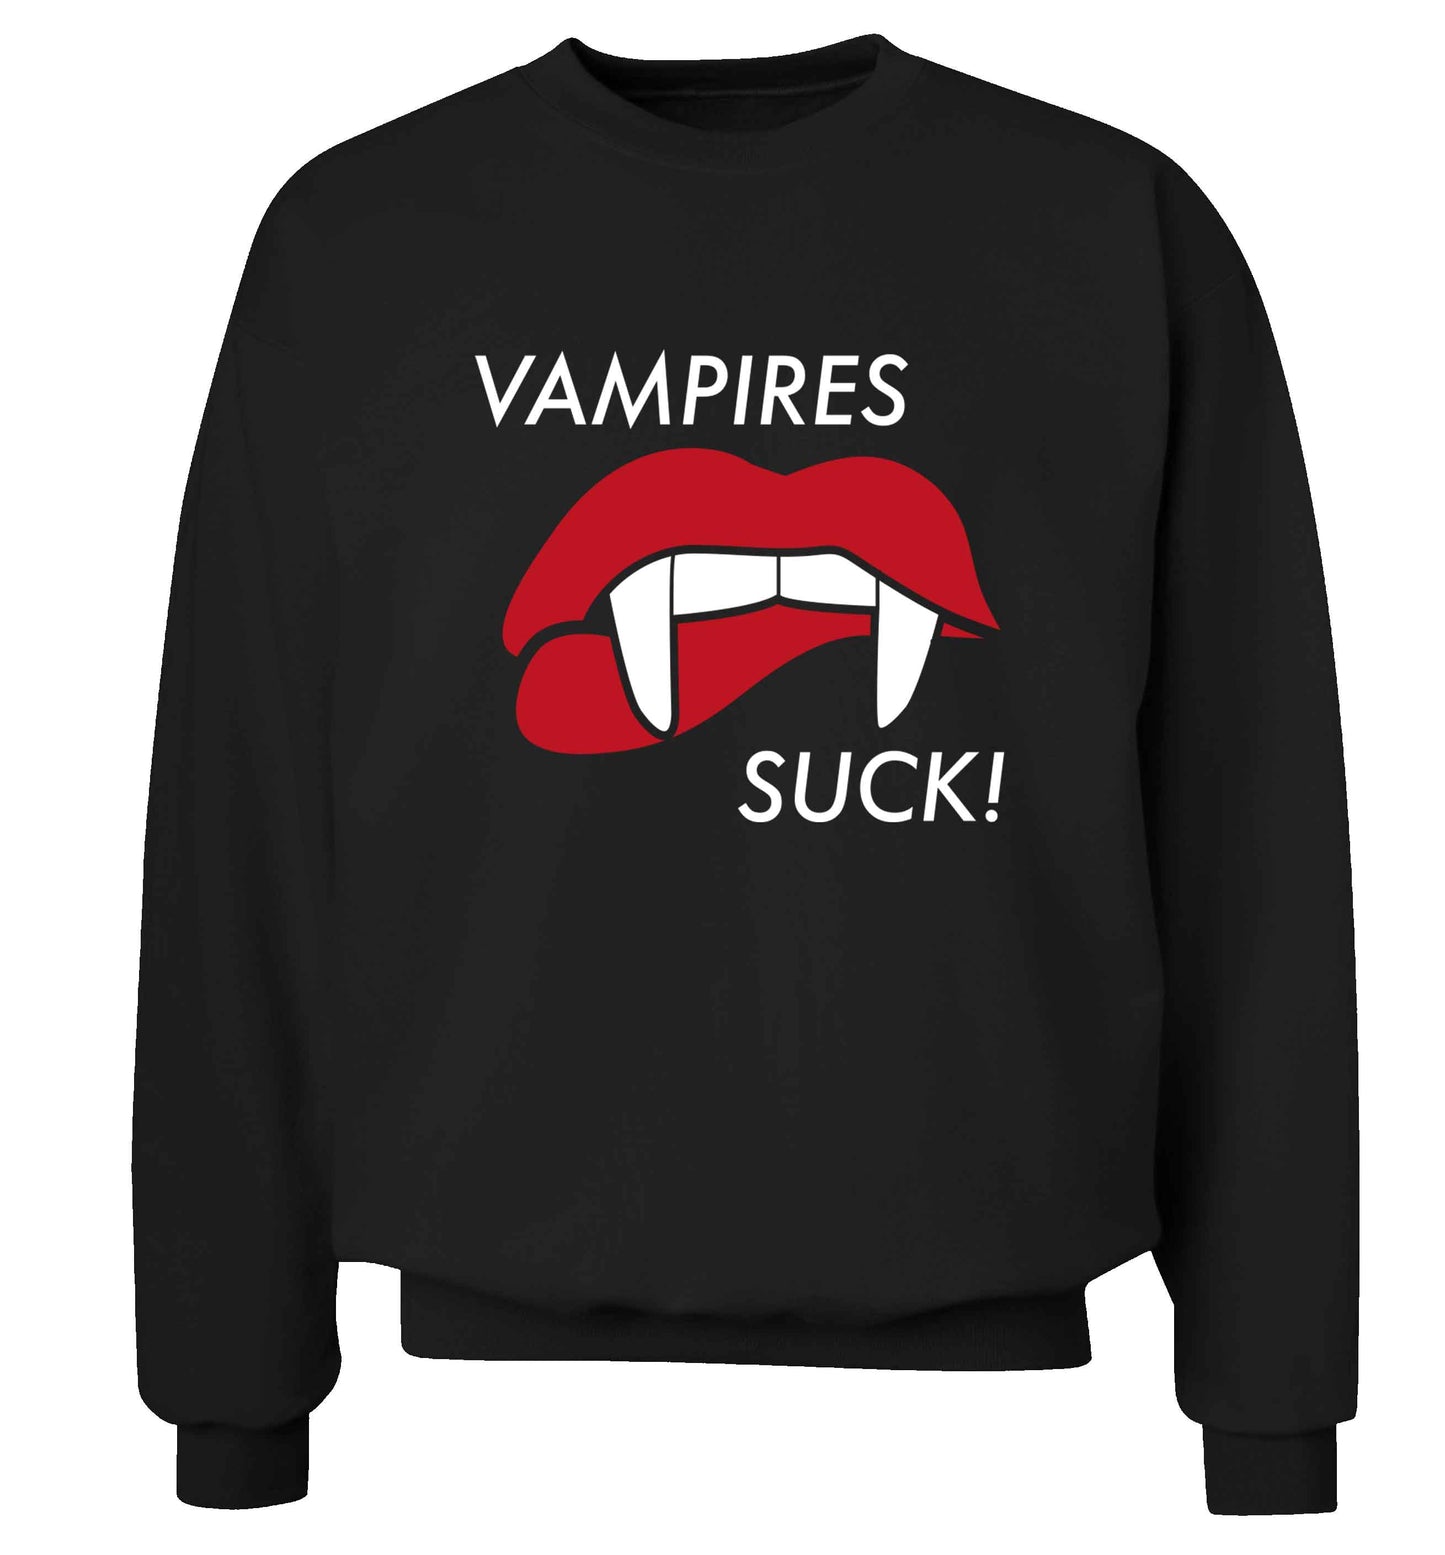 Vampires suck adult's unisex black sweater 2XL